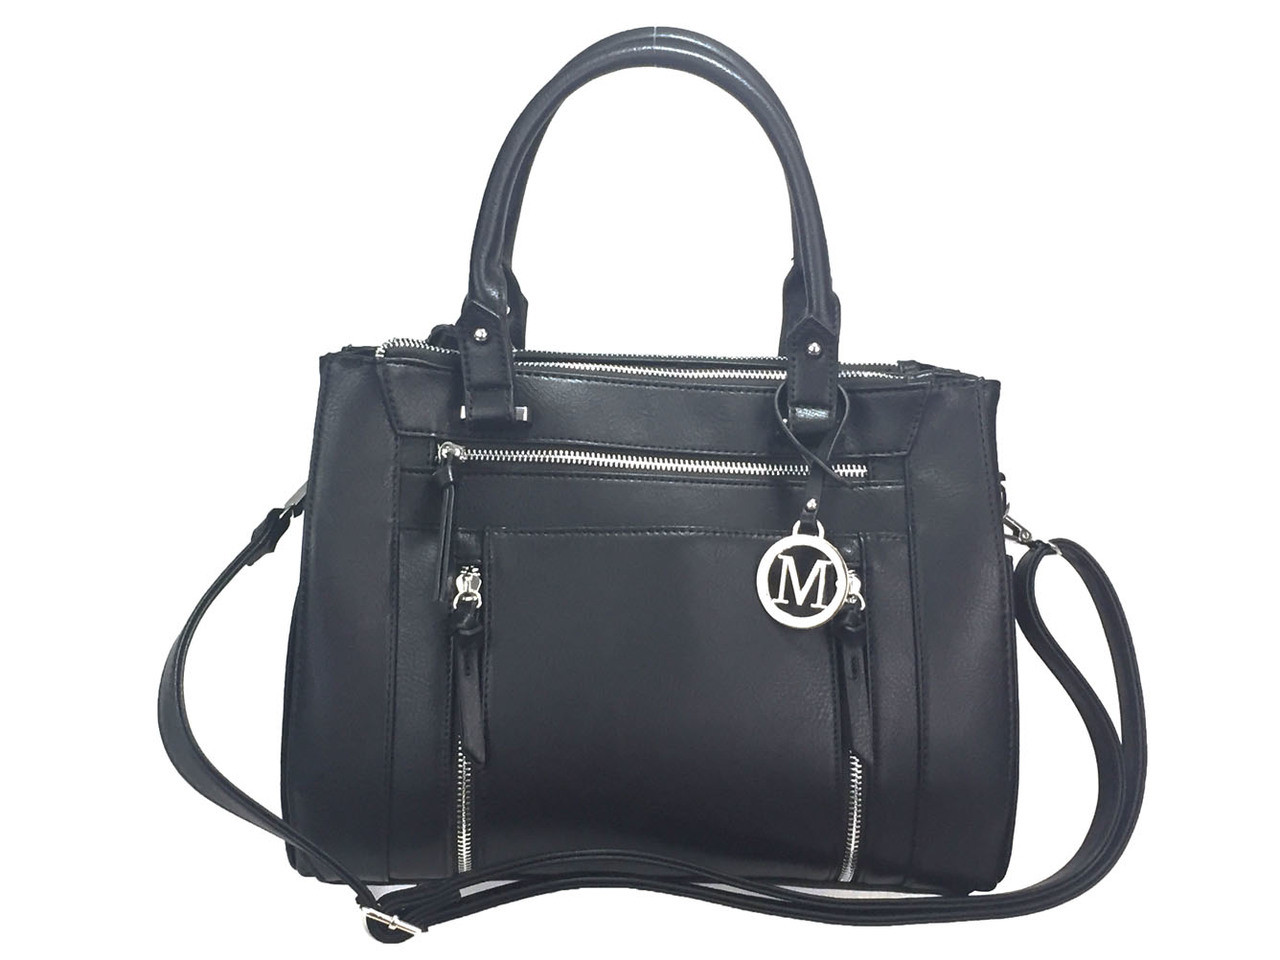 QUARRYUS Fashion Faux Leather Hand Bag, Double Handle Zipper Shoulder Bag for Ladies, Simple Satchel Purse, Women's, Size: One size, Black